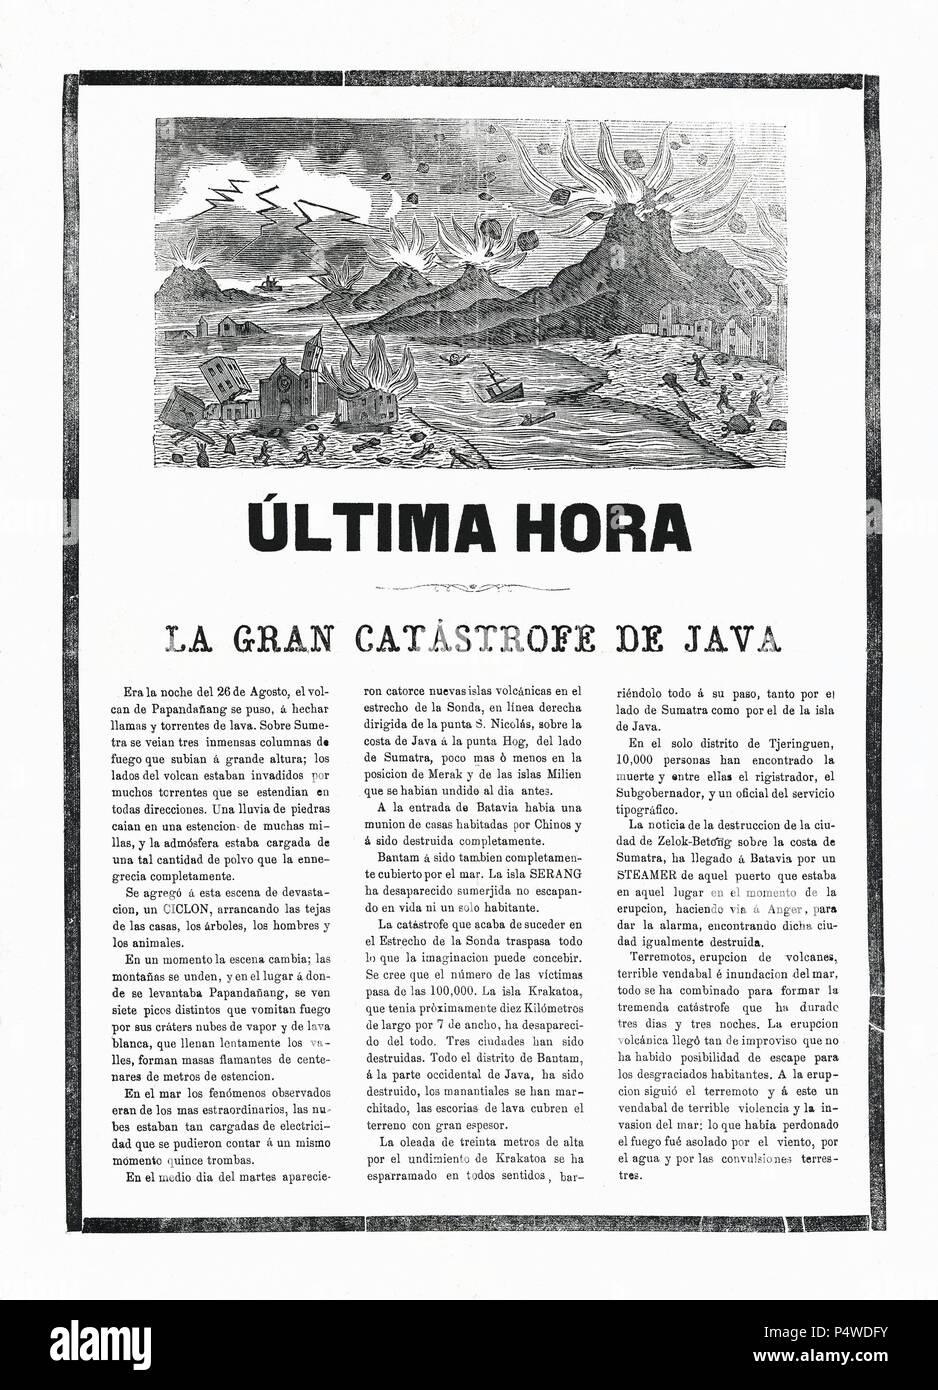 Última hora. Crónica sobre la gran catátrofe de la isla de Java; la erupción del volcán de Papandañang causó la desaparición de la isla de Krakatoa. Publicado en Barcelona en 1883. Stock Photo